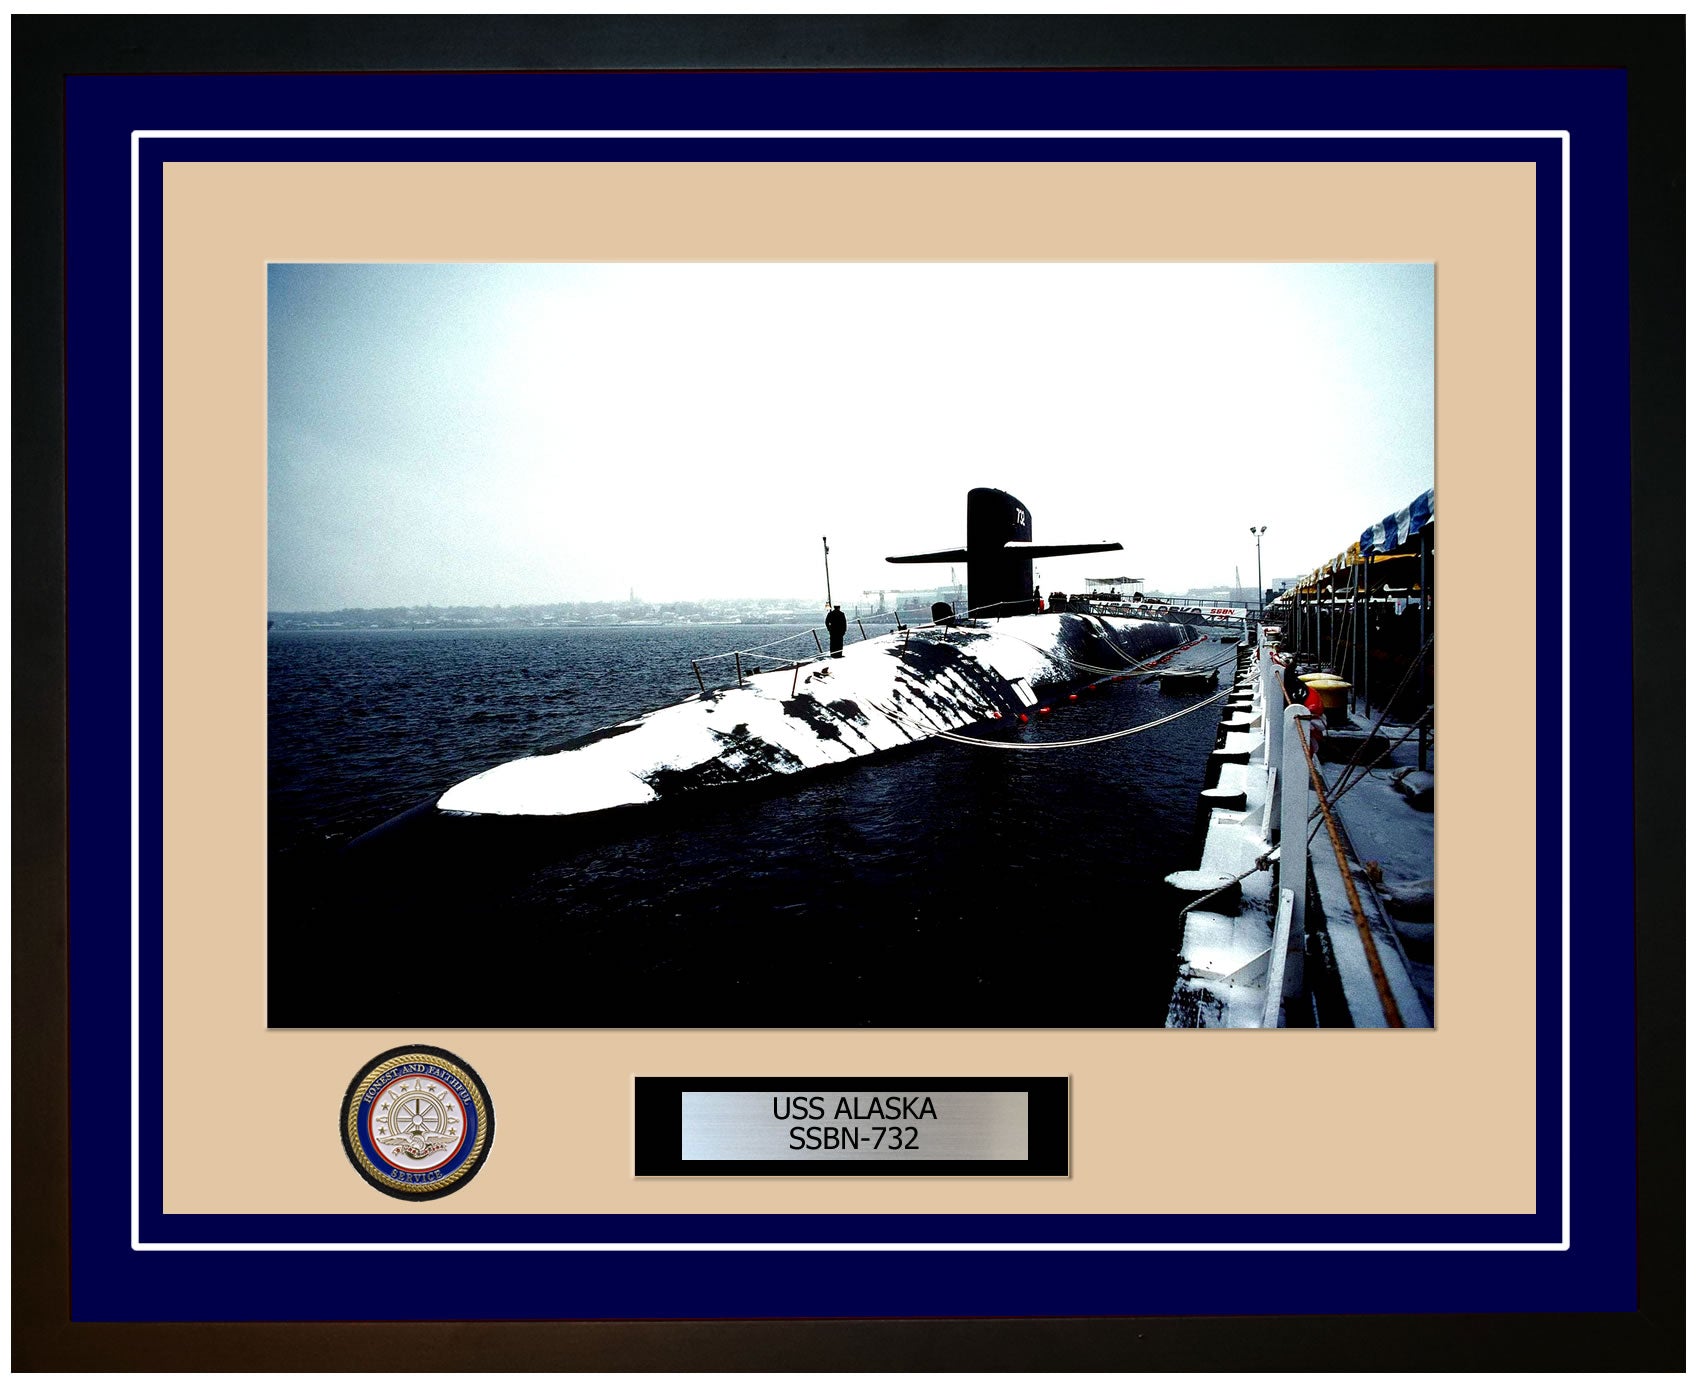 USS Alaska SSBN-732 Framed Navy Ship Photo Blue